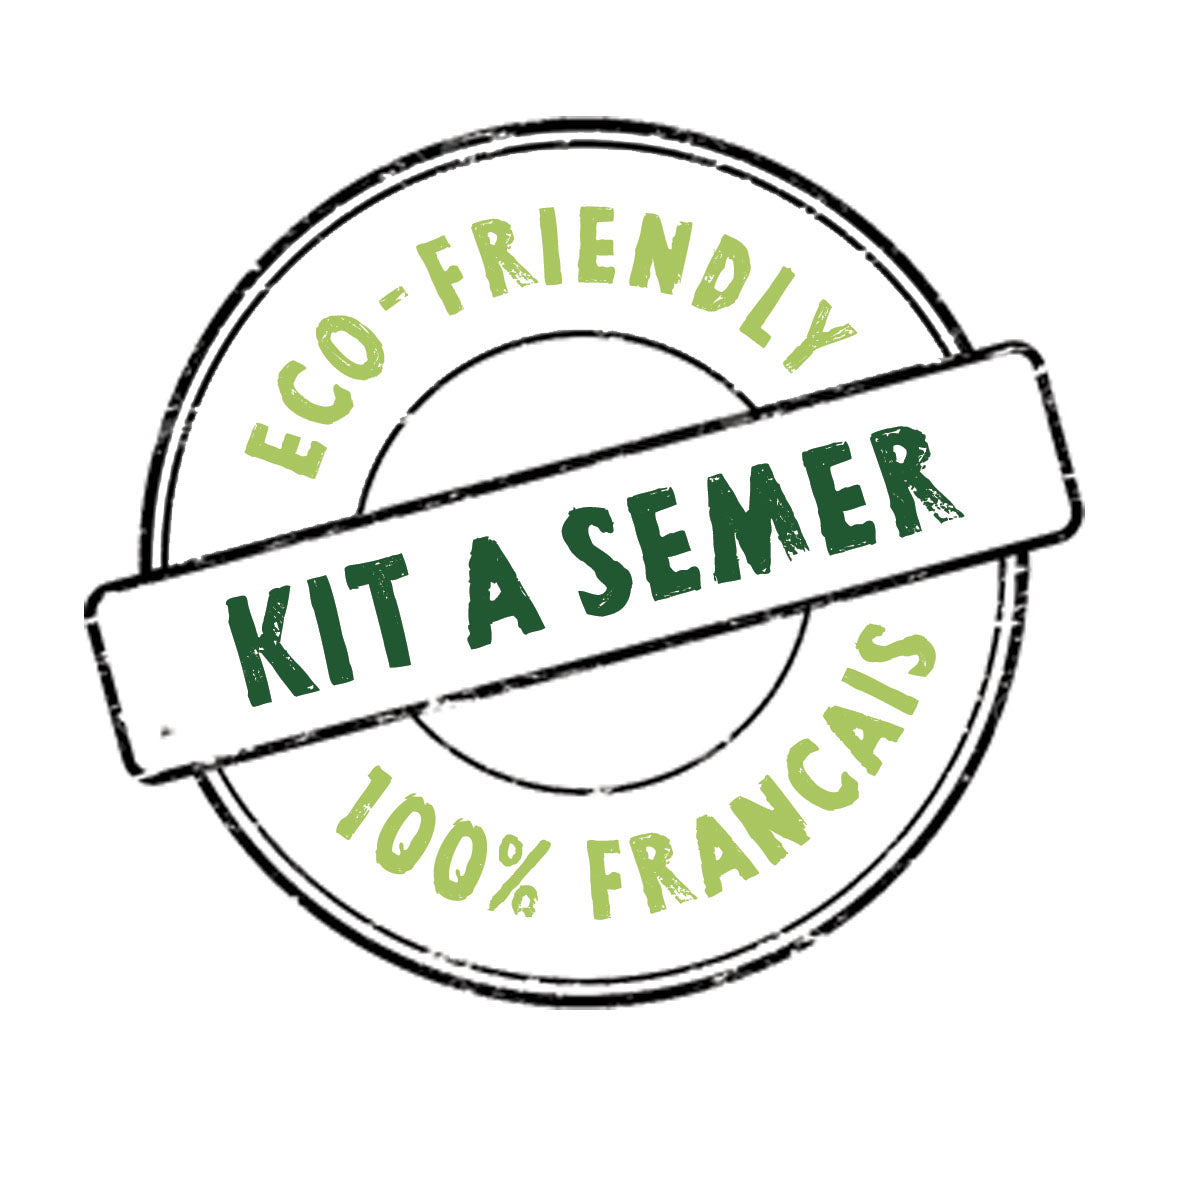 Kit à semer "Merci" fabriqué en France